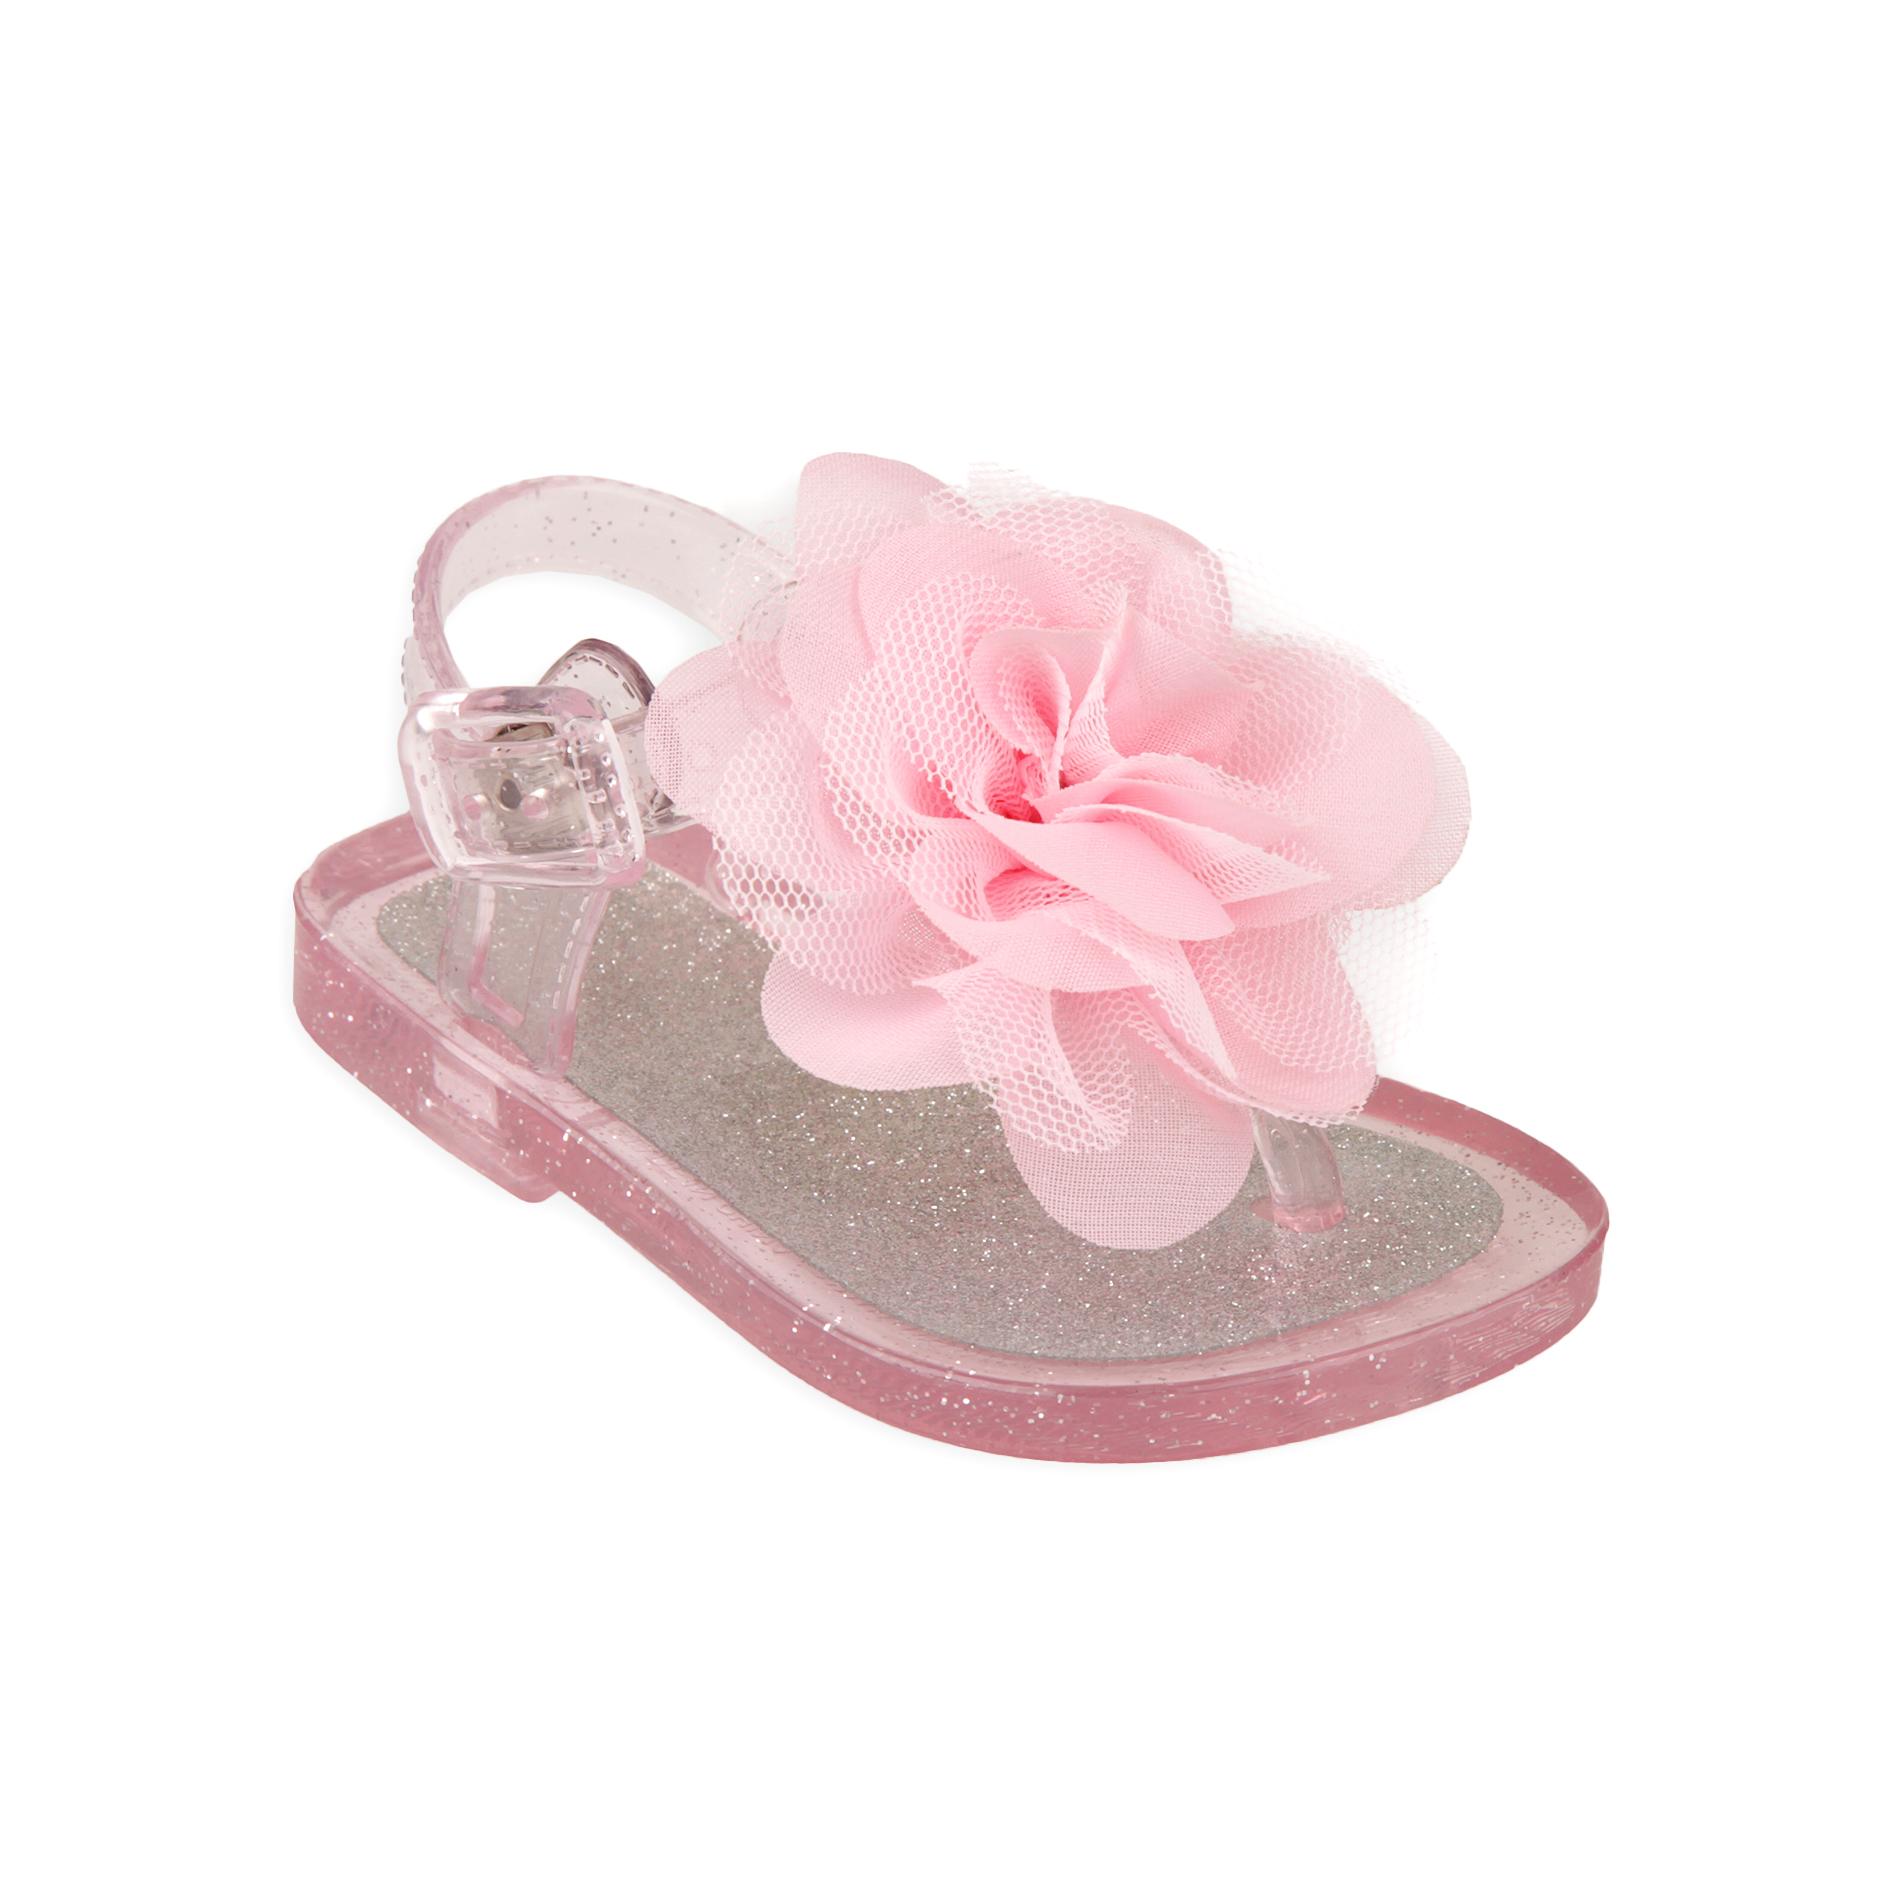 Little Wonders Infant & Toddler Girl's Pink Glitter Gel Sandal